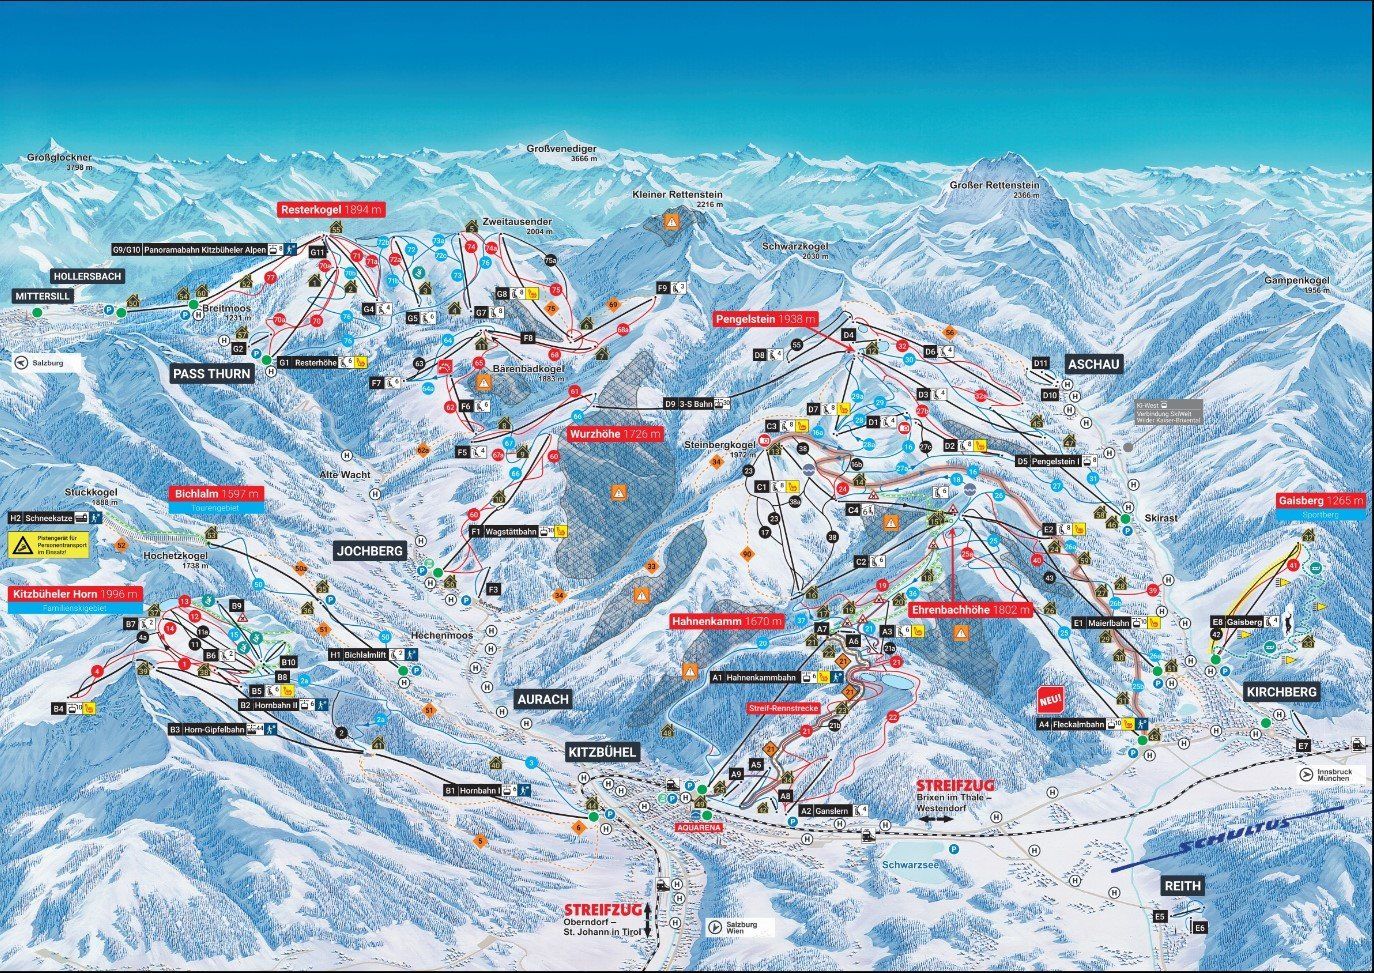 Pistenplan / Karte Skigebiet Pass Thurn, 